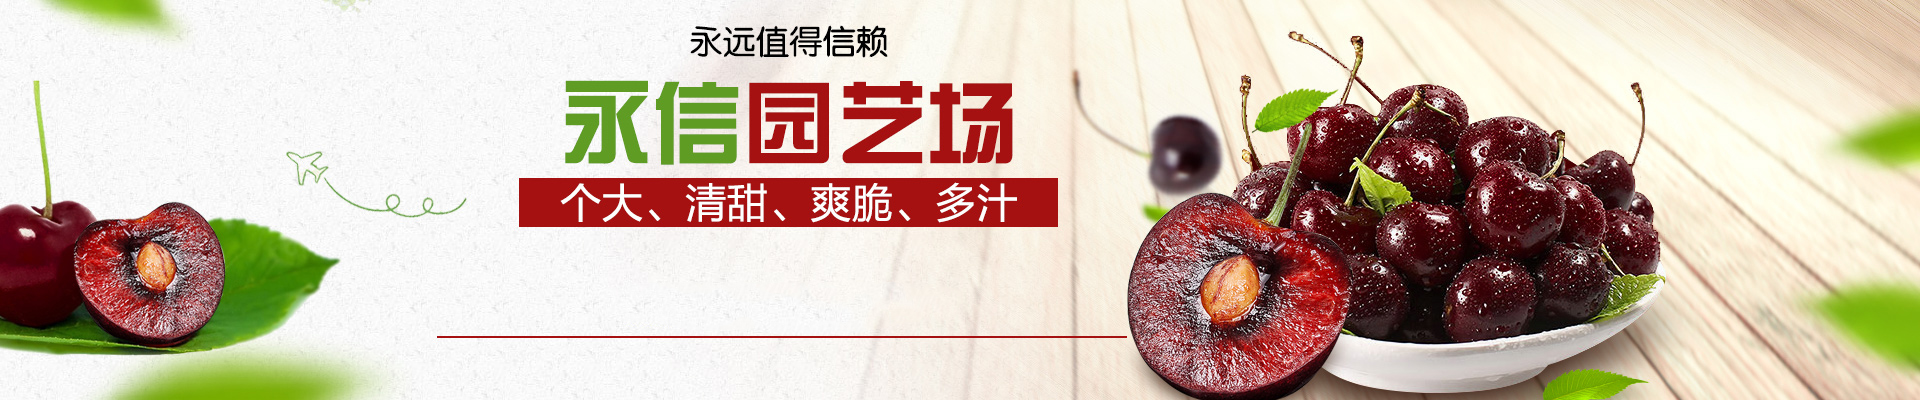 妙香草莓苗零售价格 妙香草莓苗厂家批发